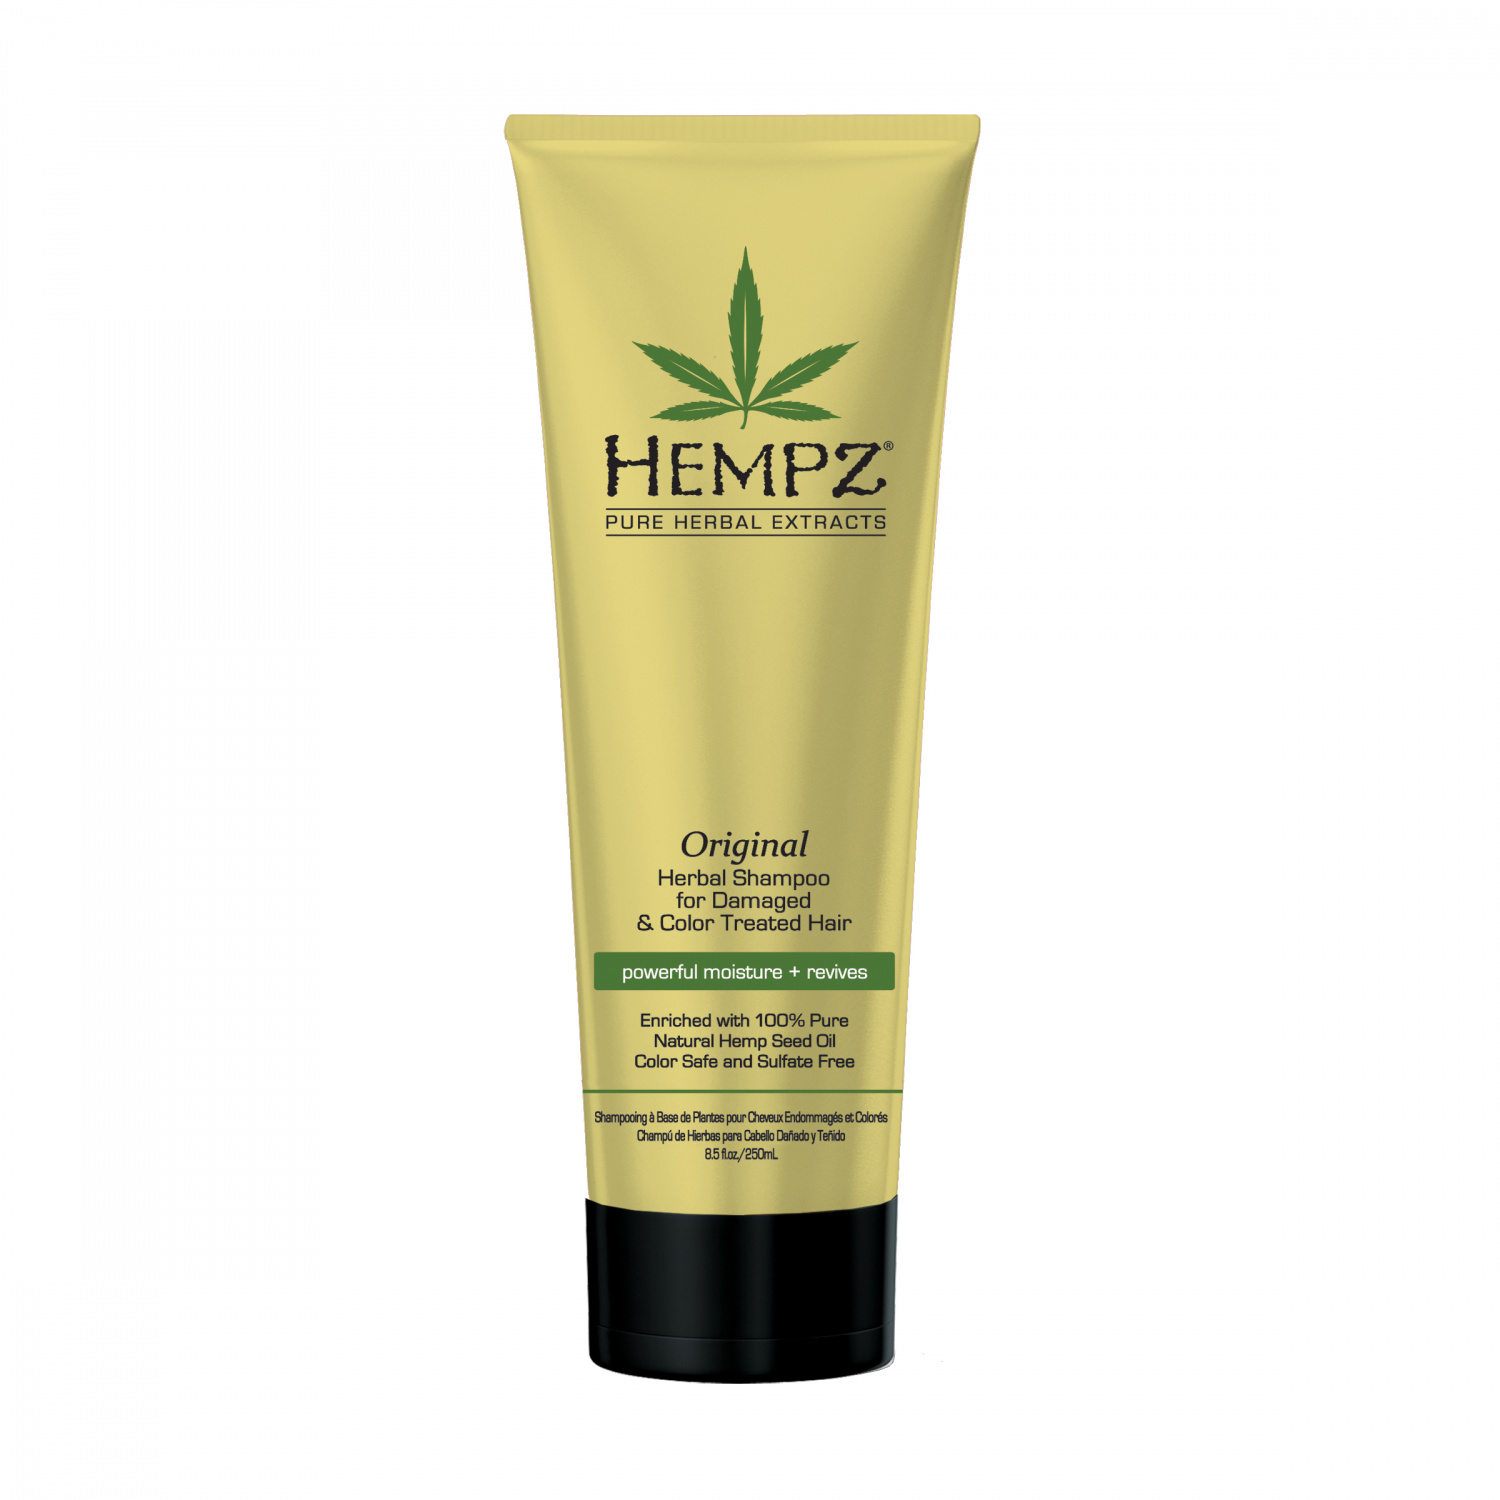 Hempz Original Herbal Shampoo 265ml - интернет-магазин профессиональной косметики Spadream, изображение 17416